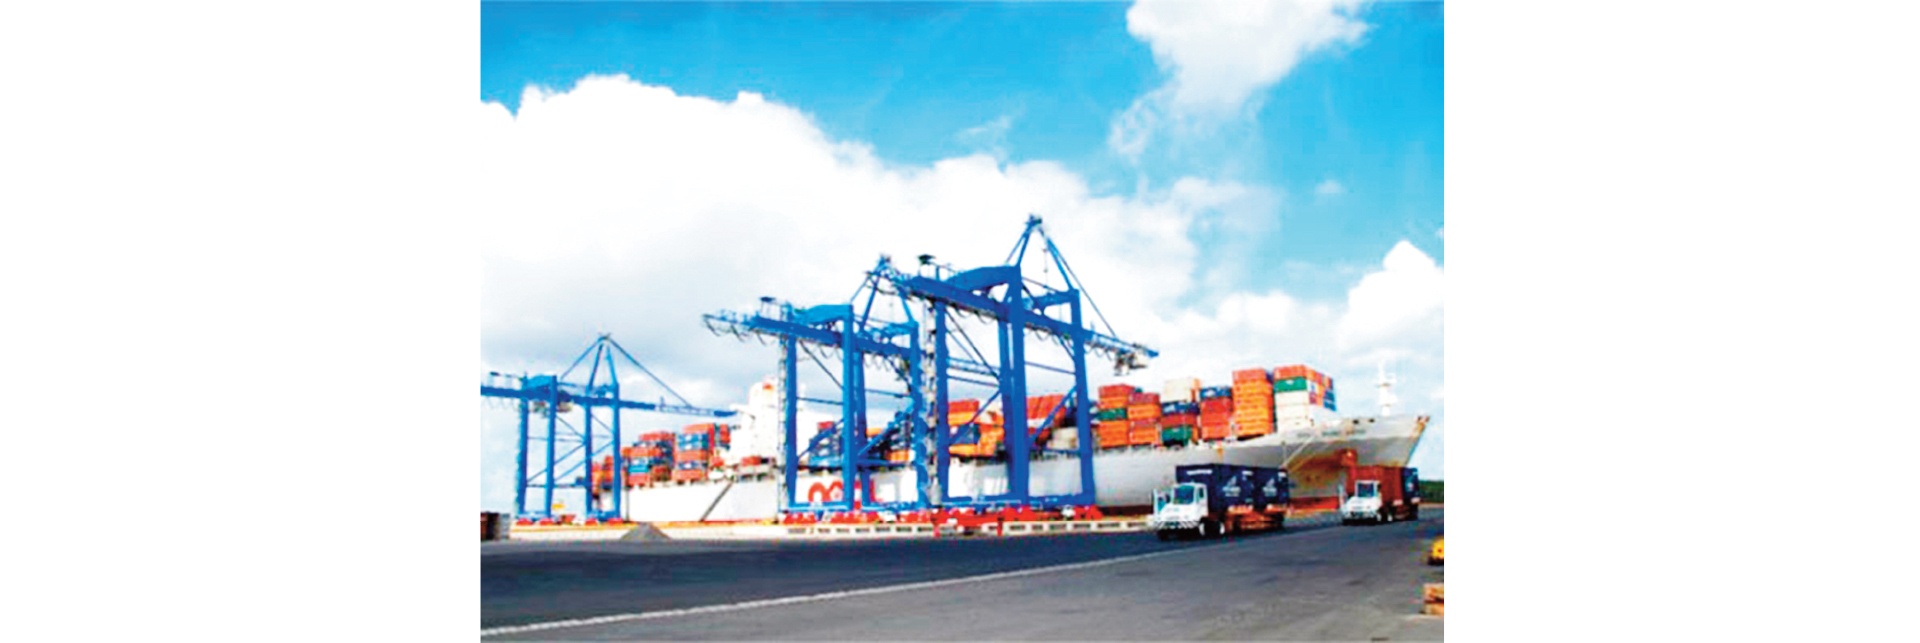 MEGASTORY: Phát triển hệ thống cảng biển đáp ứng xu thế hội nhập quốc tế